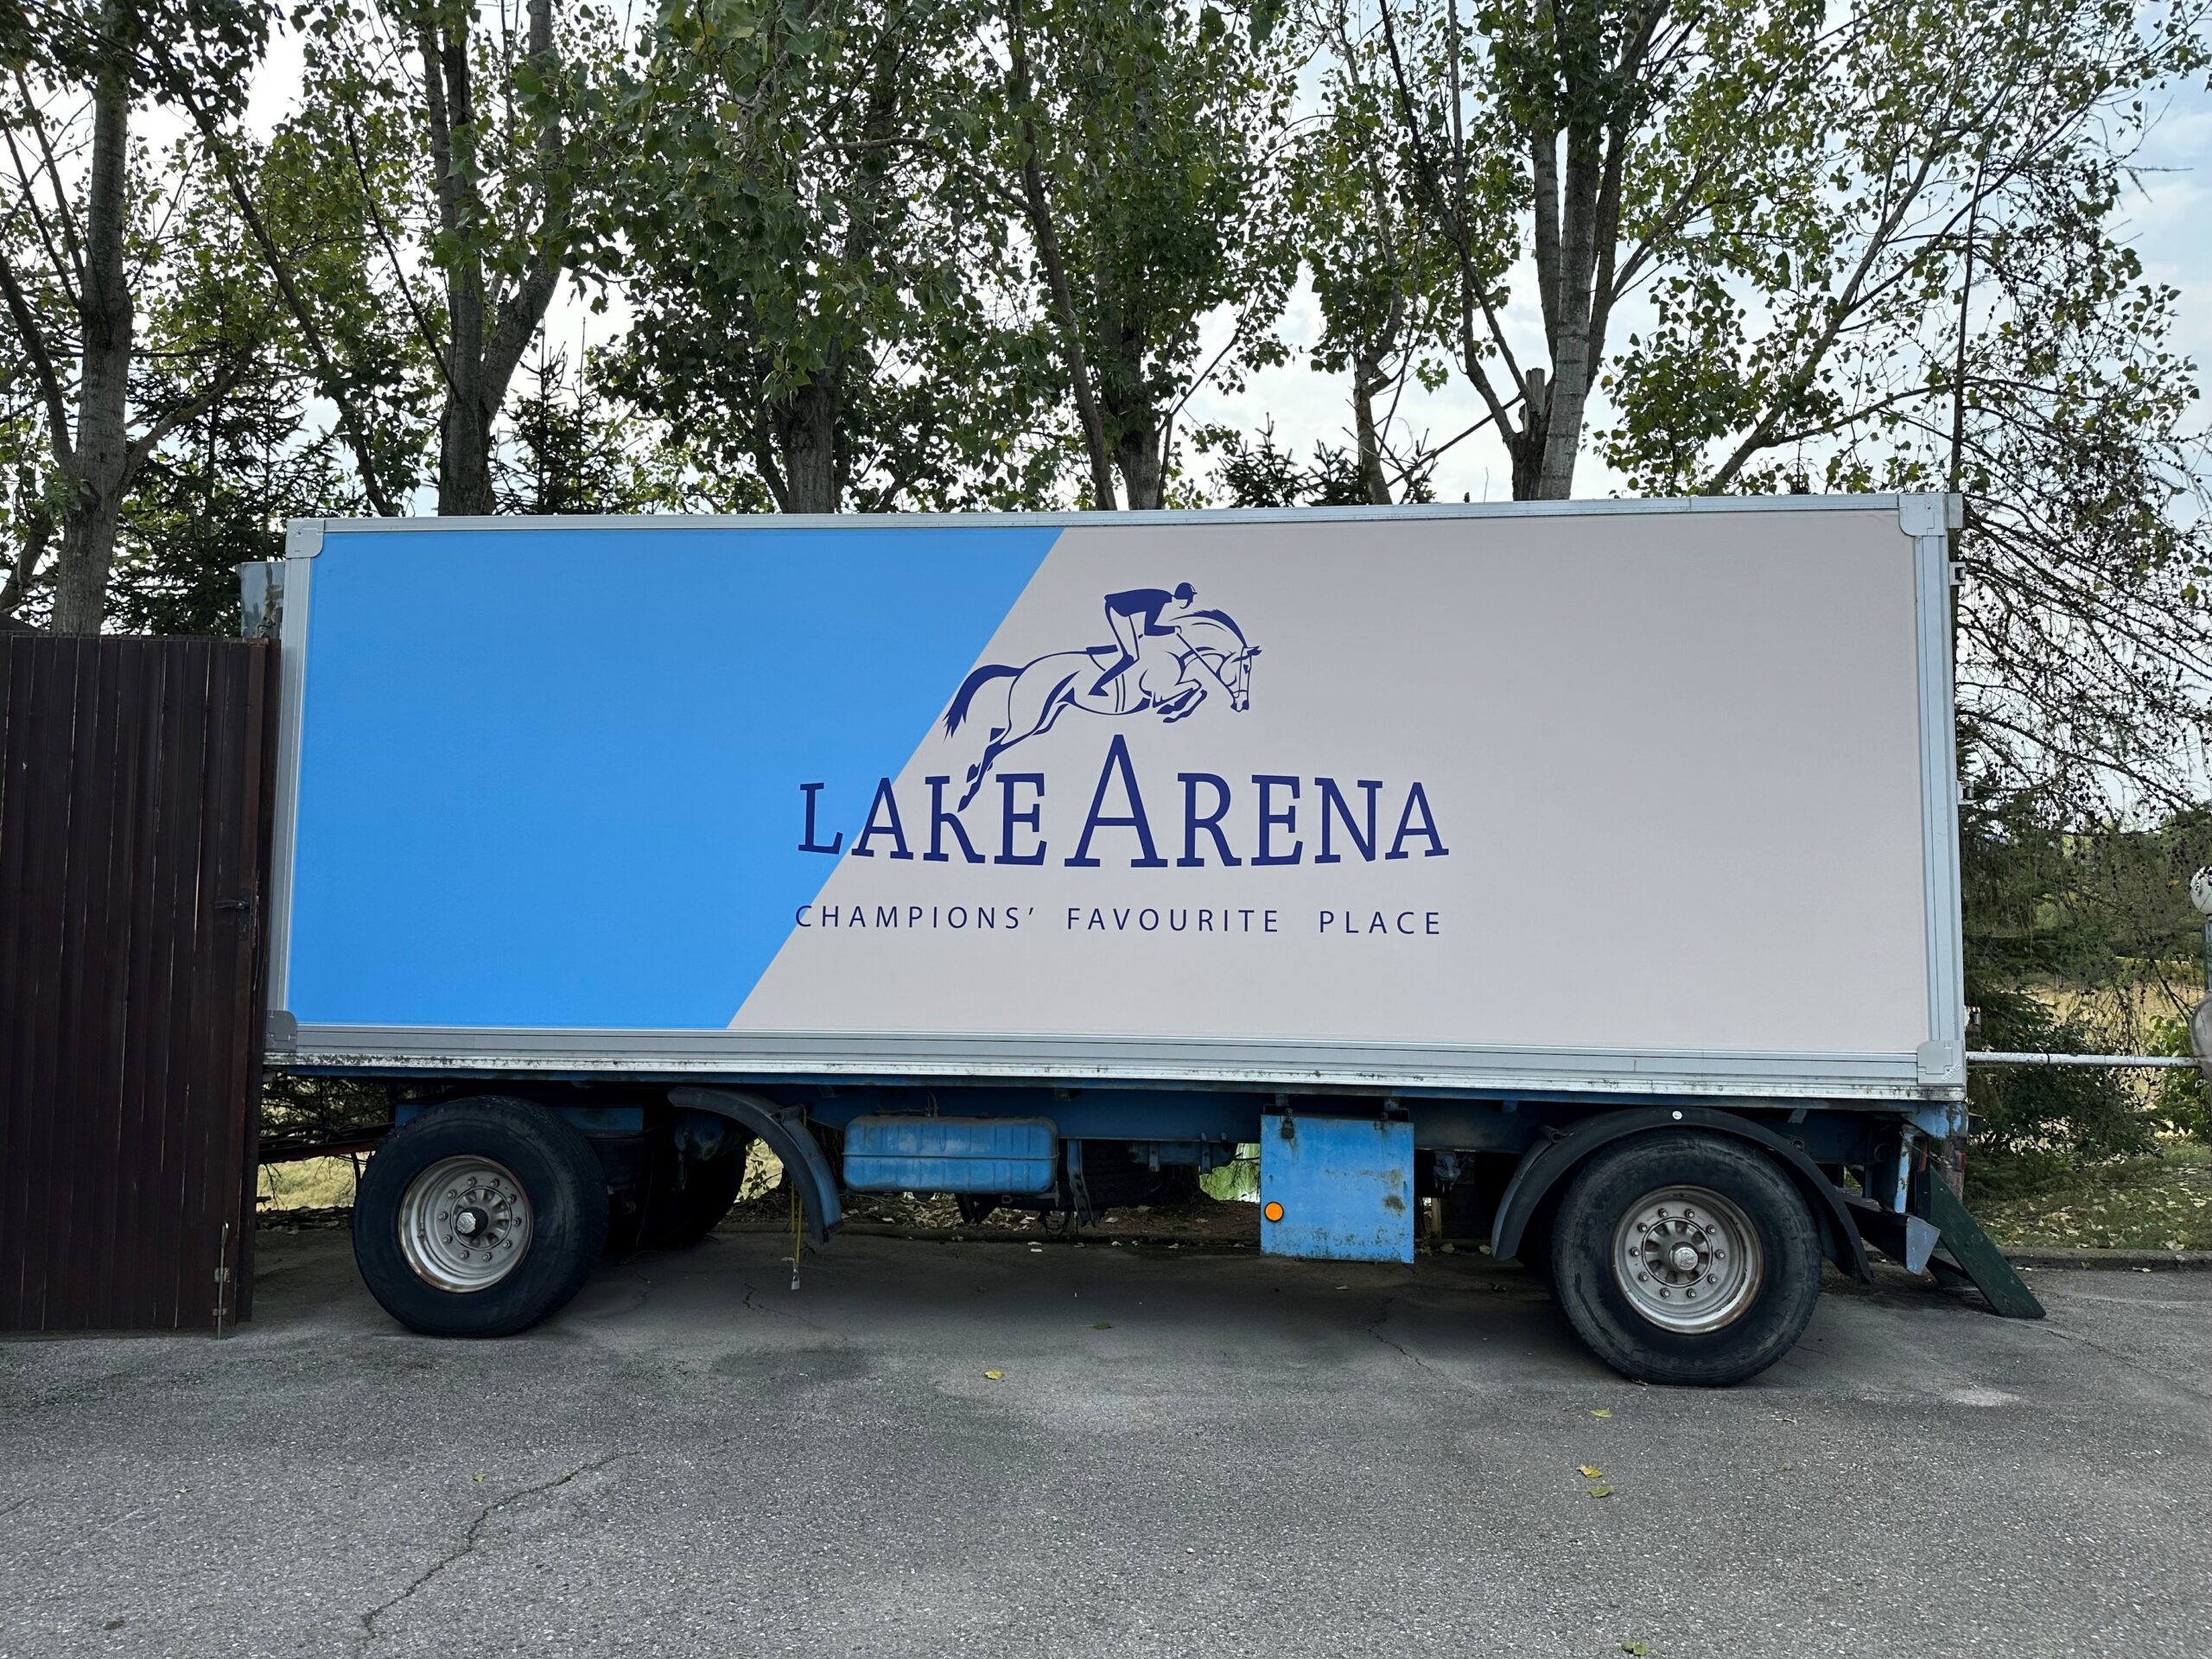 LKW Werbung Lake Arena